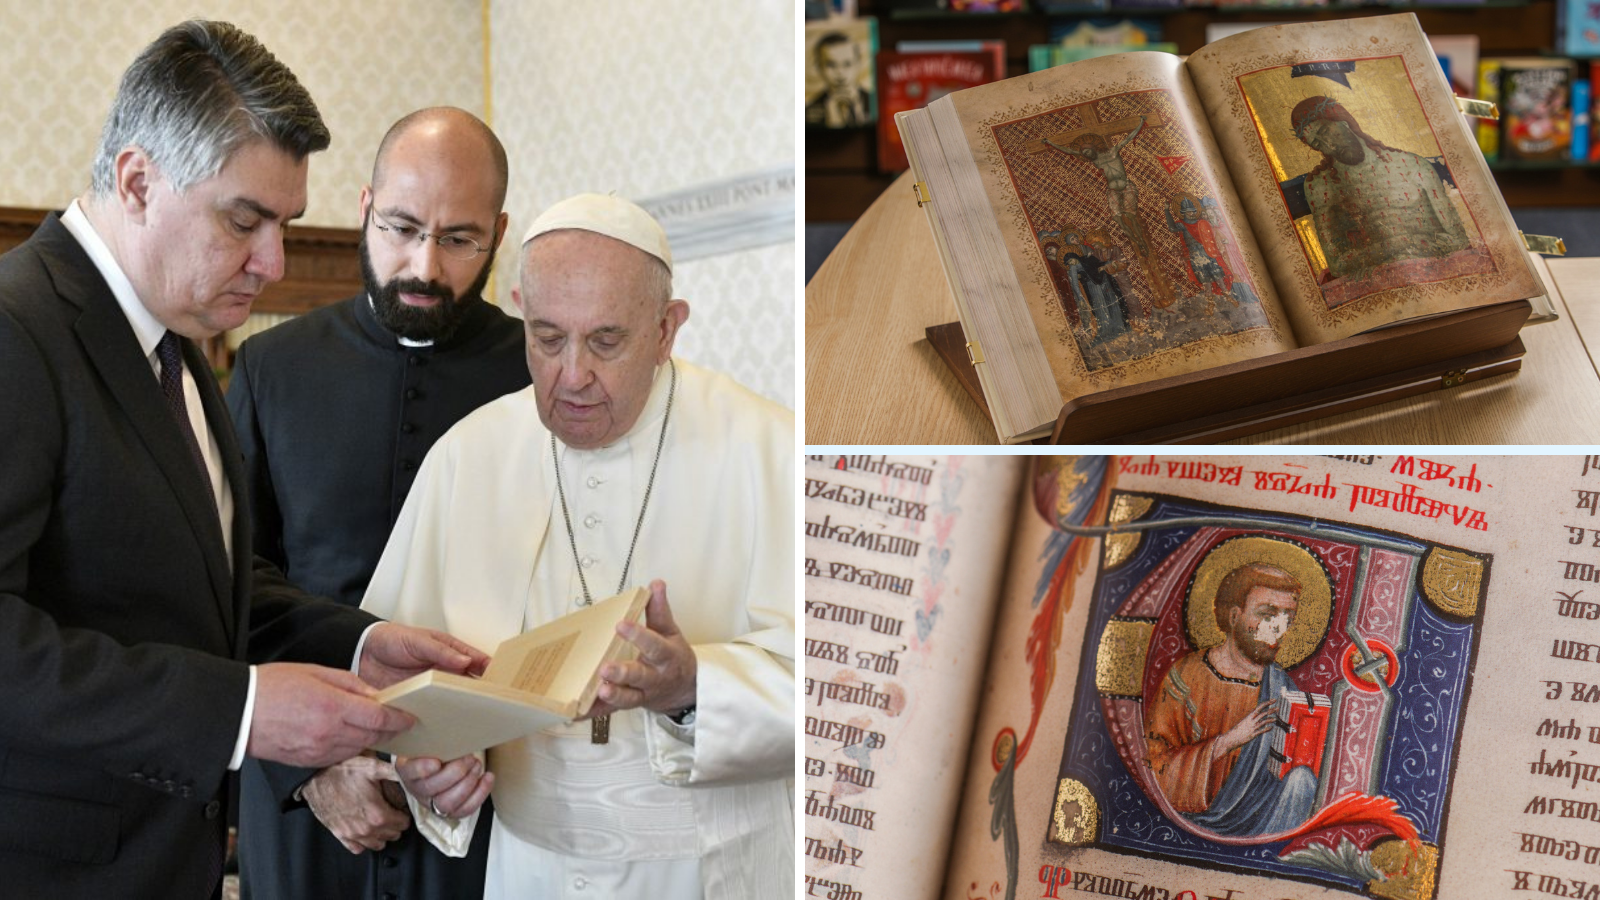 Sve o knjizi koju je Milanović poklonio Papi Franji u Vatikanu: Unikat je i košta 20 tisuća kuna